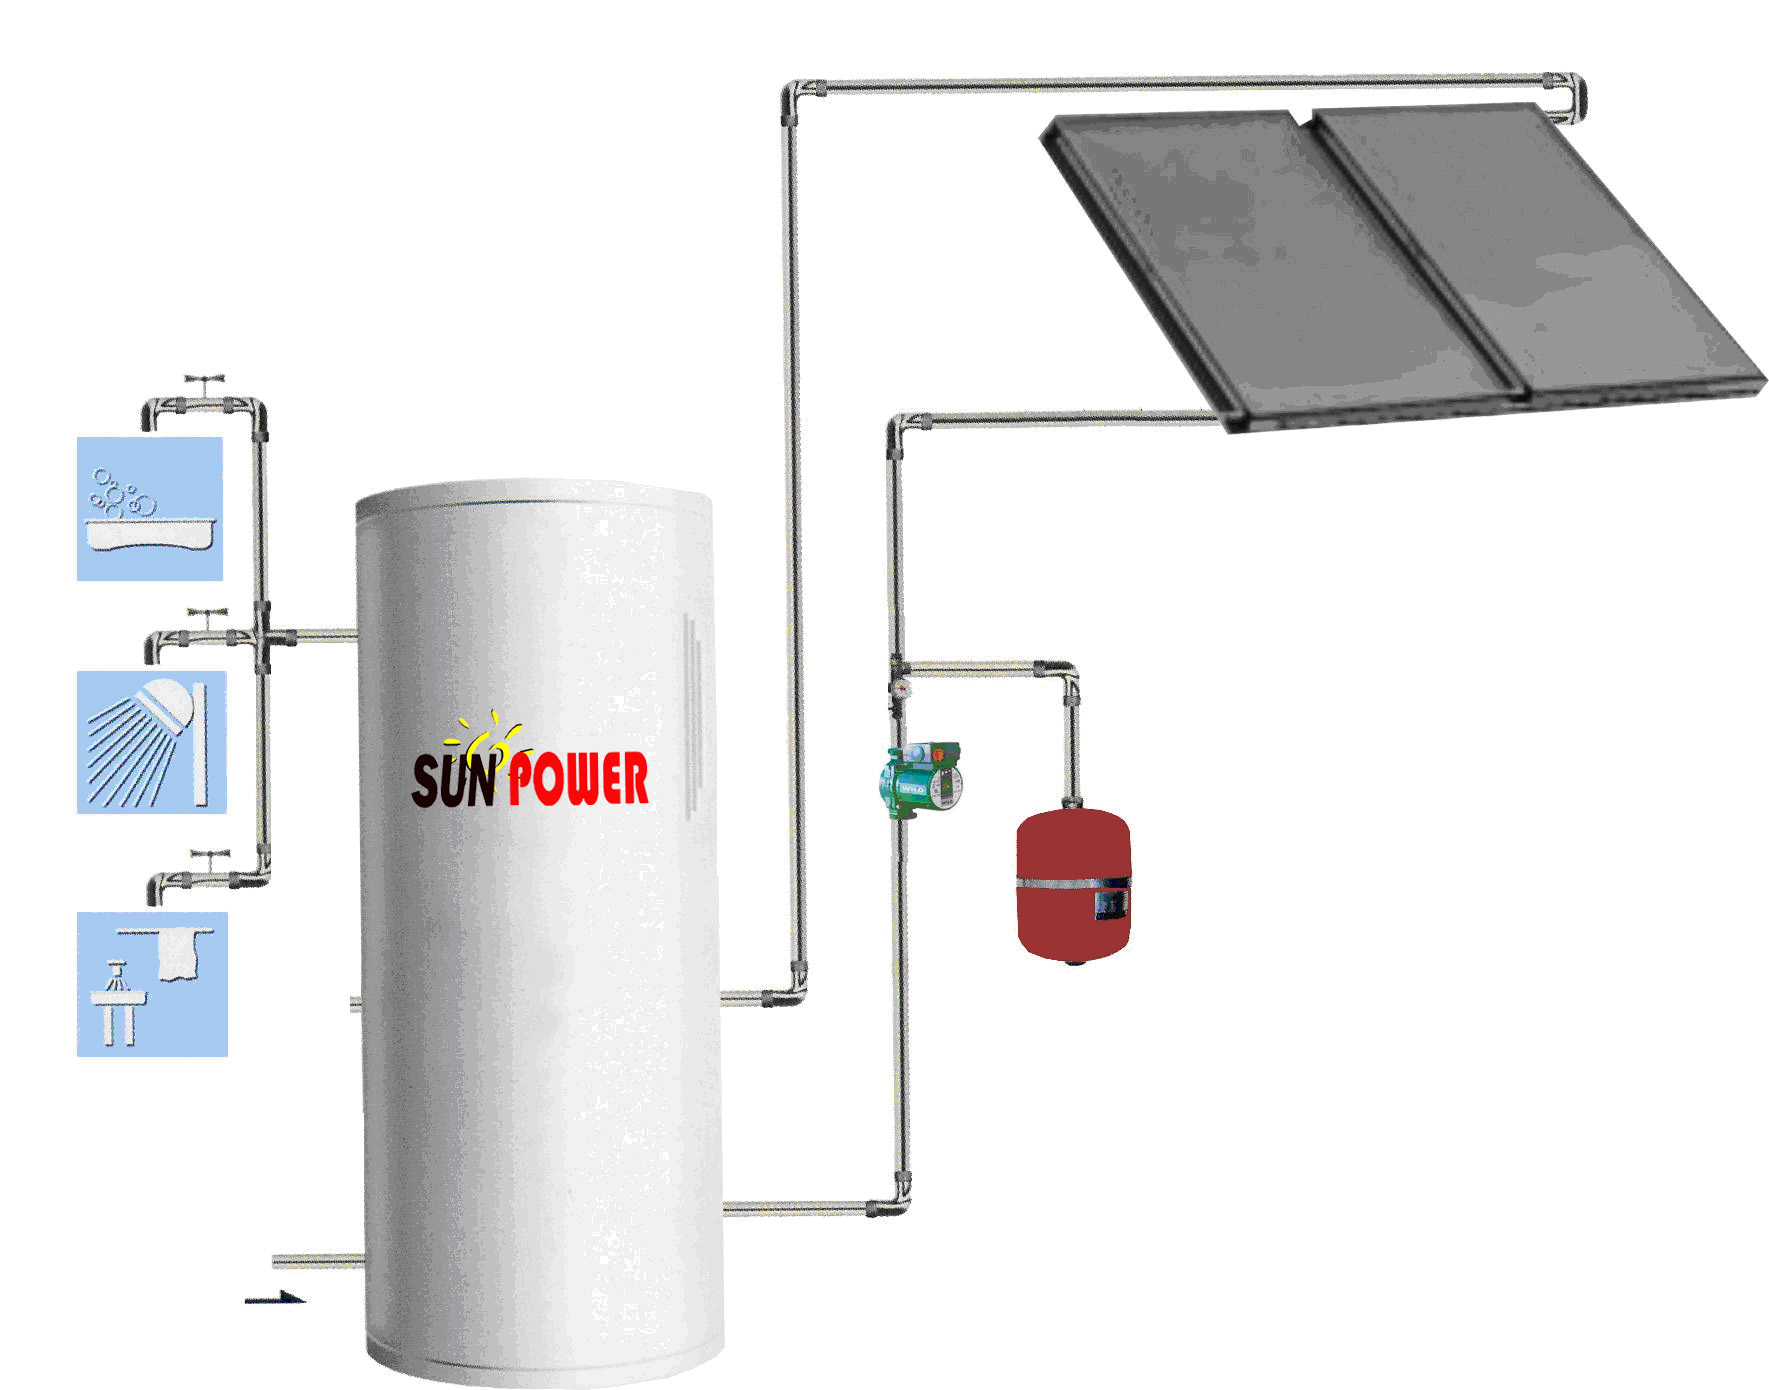 Colector solar de placa plana (SPFP) con capacidad térmica efectiva SPL